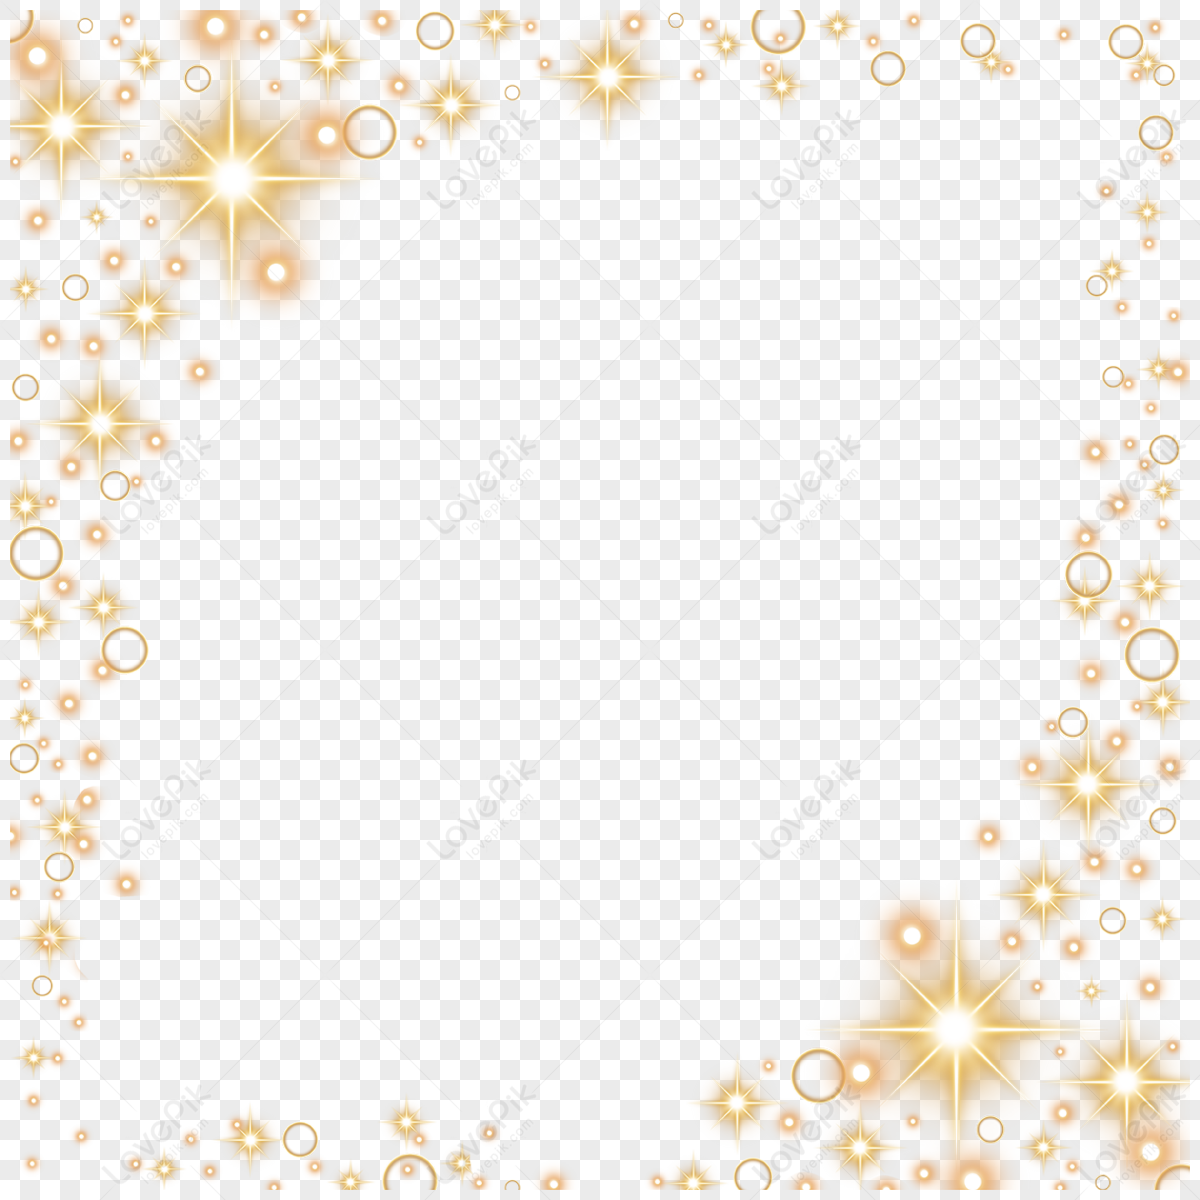 Cadre Lumineux De Luciole Rose Superposition De Sorts De Particules D' étoiles Sur Fond Transparent Avec Espace Sombre Illustration D'effet  Vectoriel De Bordure De Bokeh De Lumière D'étoile Fluorescente étincelle De  Paillettes Magiques